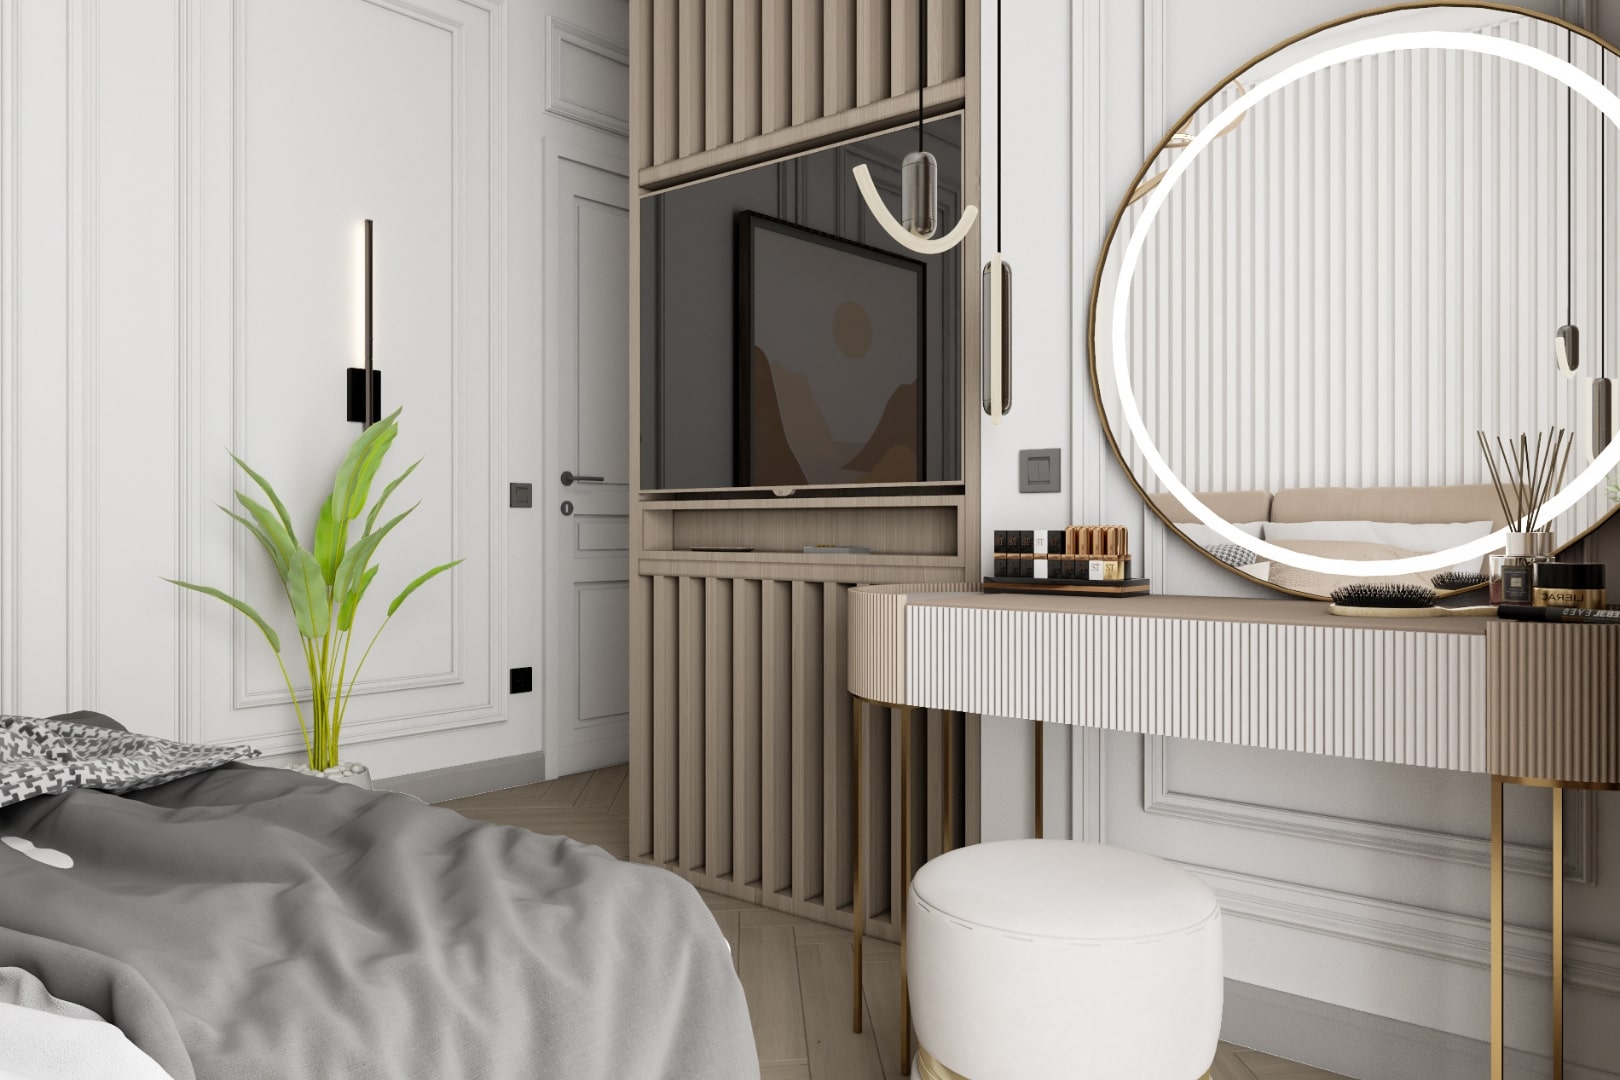 Idee de design interior pentru un dormitor modern cu accente clasice si rafinate.